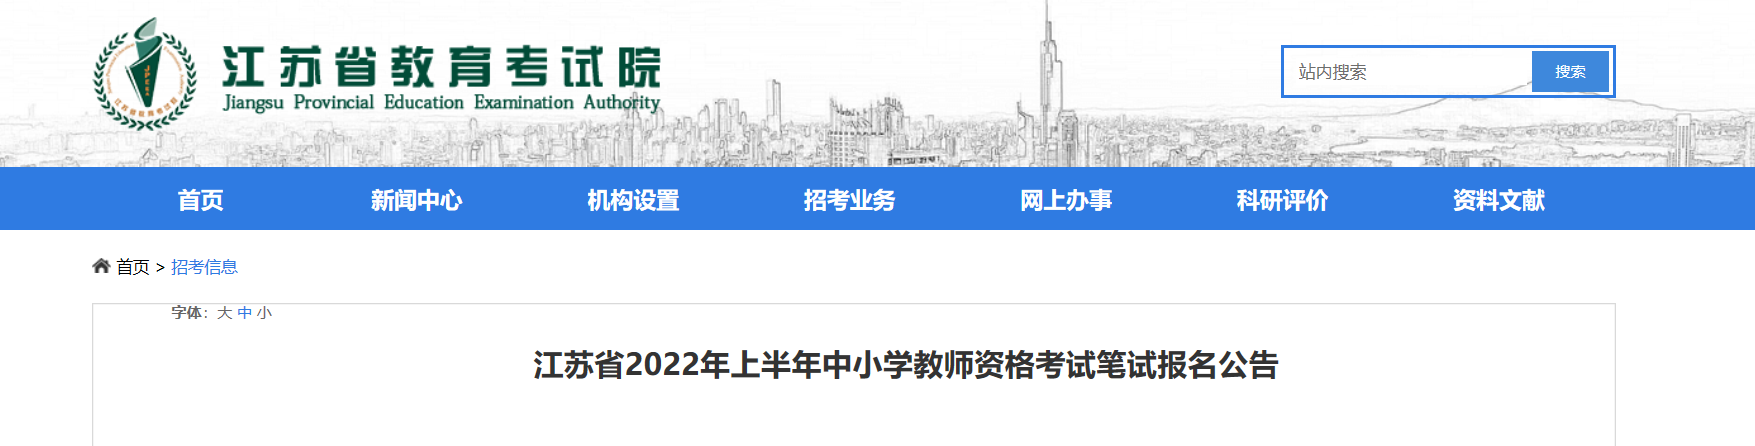 2022上半年江苏中小学教师资格证报名条件及入口【1月24日-25日】